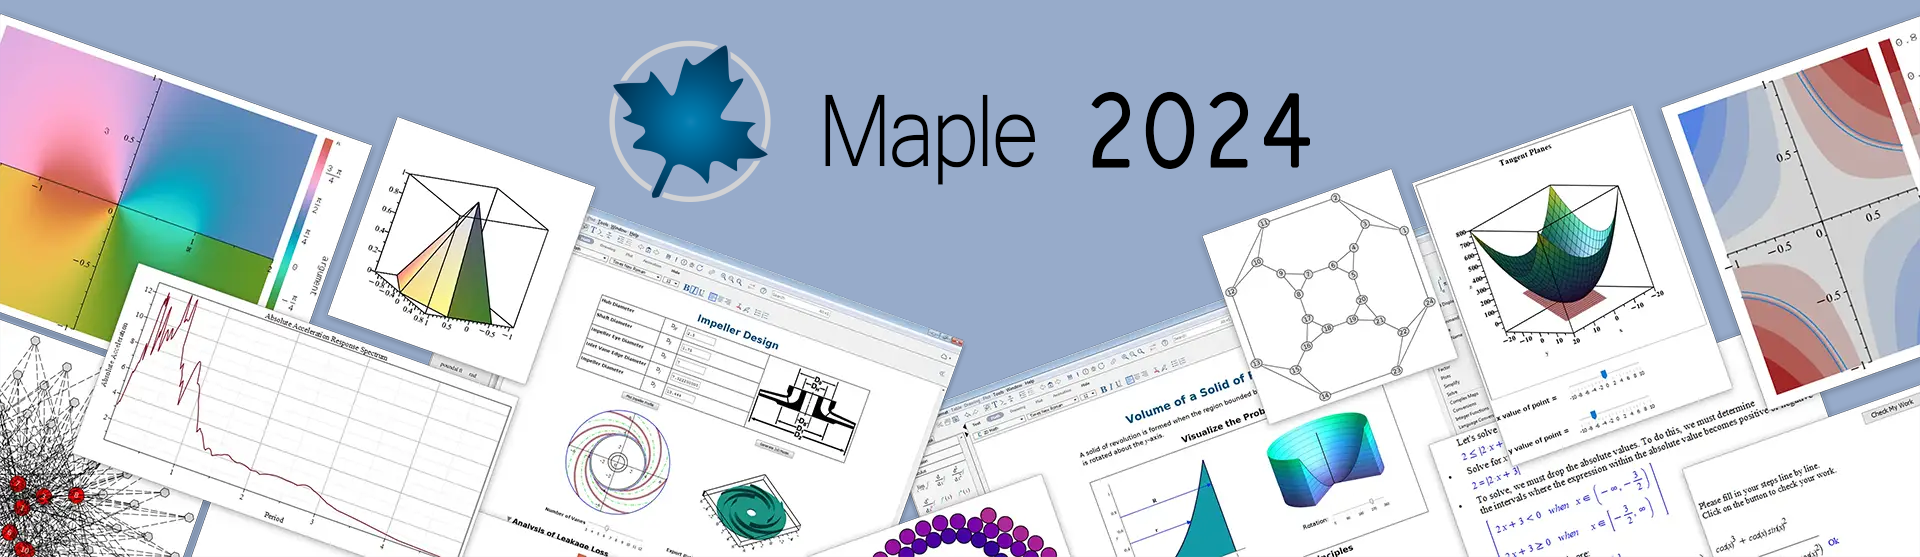 Maple 2024 incluye muchas herramientas nuevas de visualización